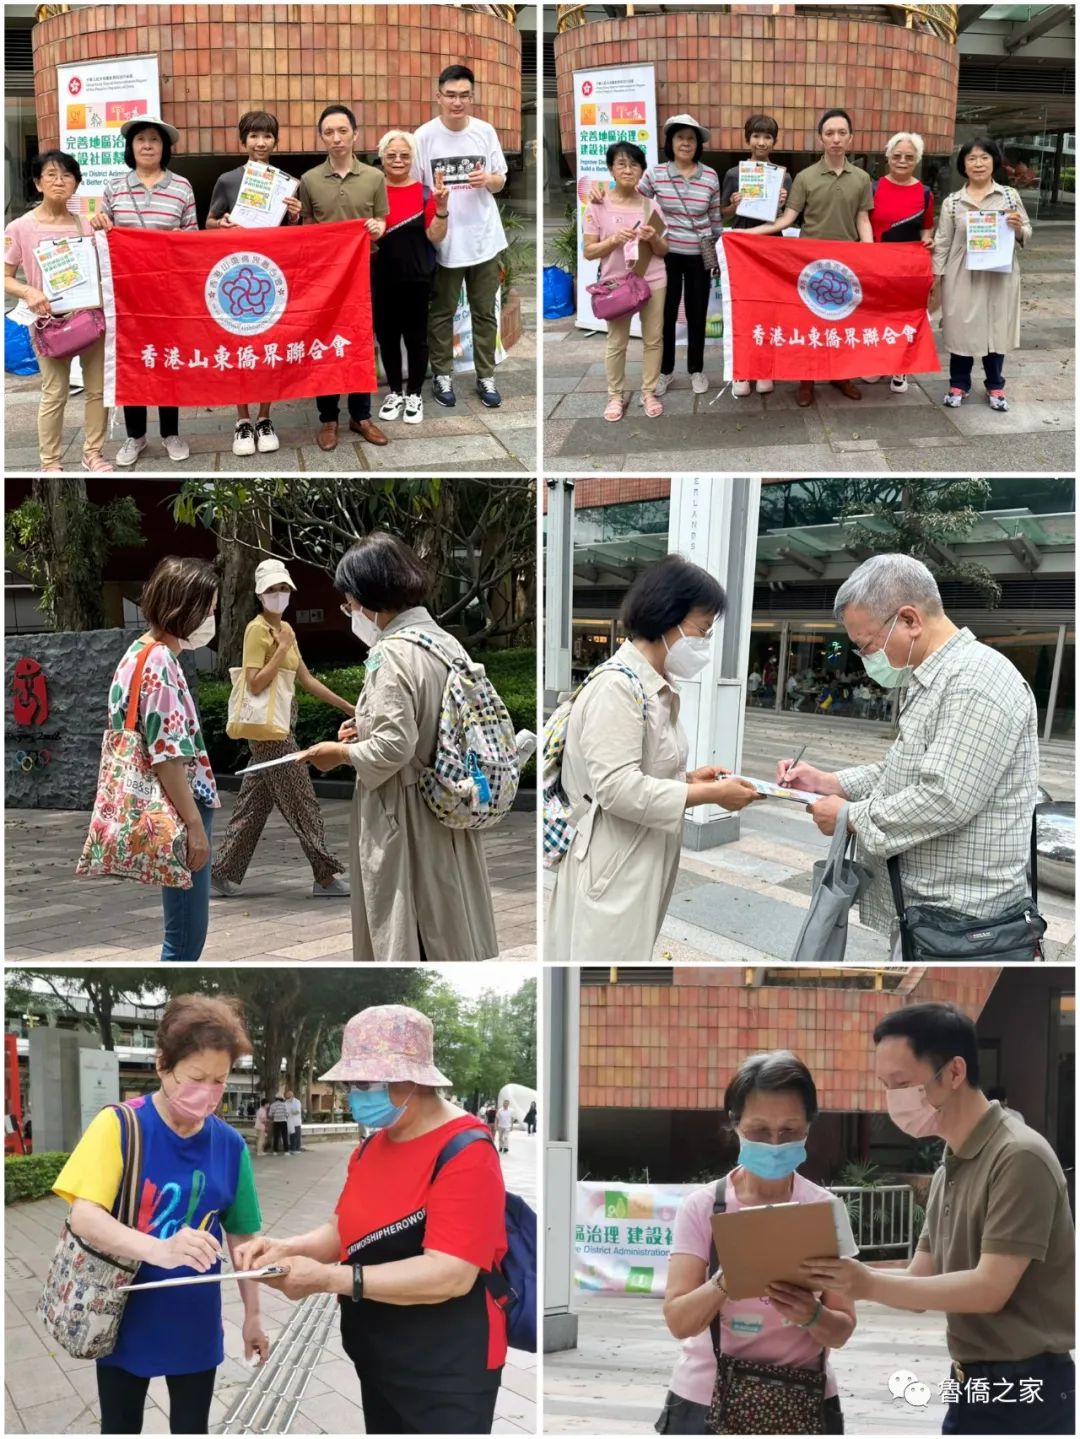 5月6日，香港山東僑界聯合會在沙田大會堂繼續開展「完善地區治理建議方案」宣傳及聯署街站，宣傳港府出台的的建議方案，徵集廣大香港市民對該方案的支持簽名。